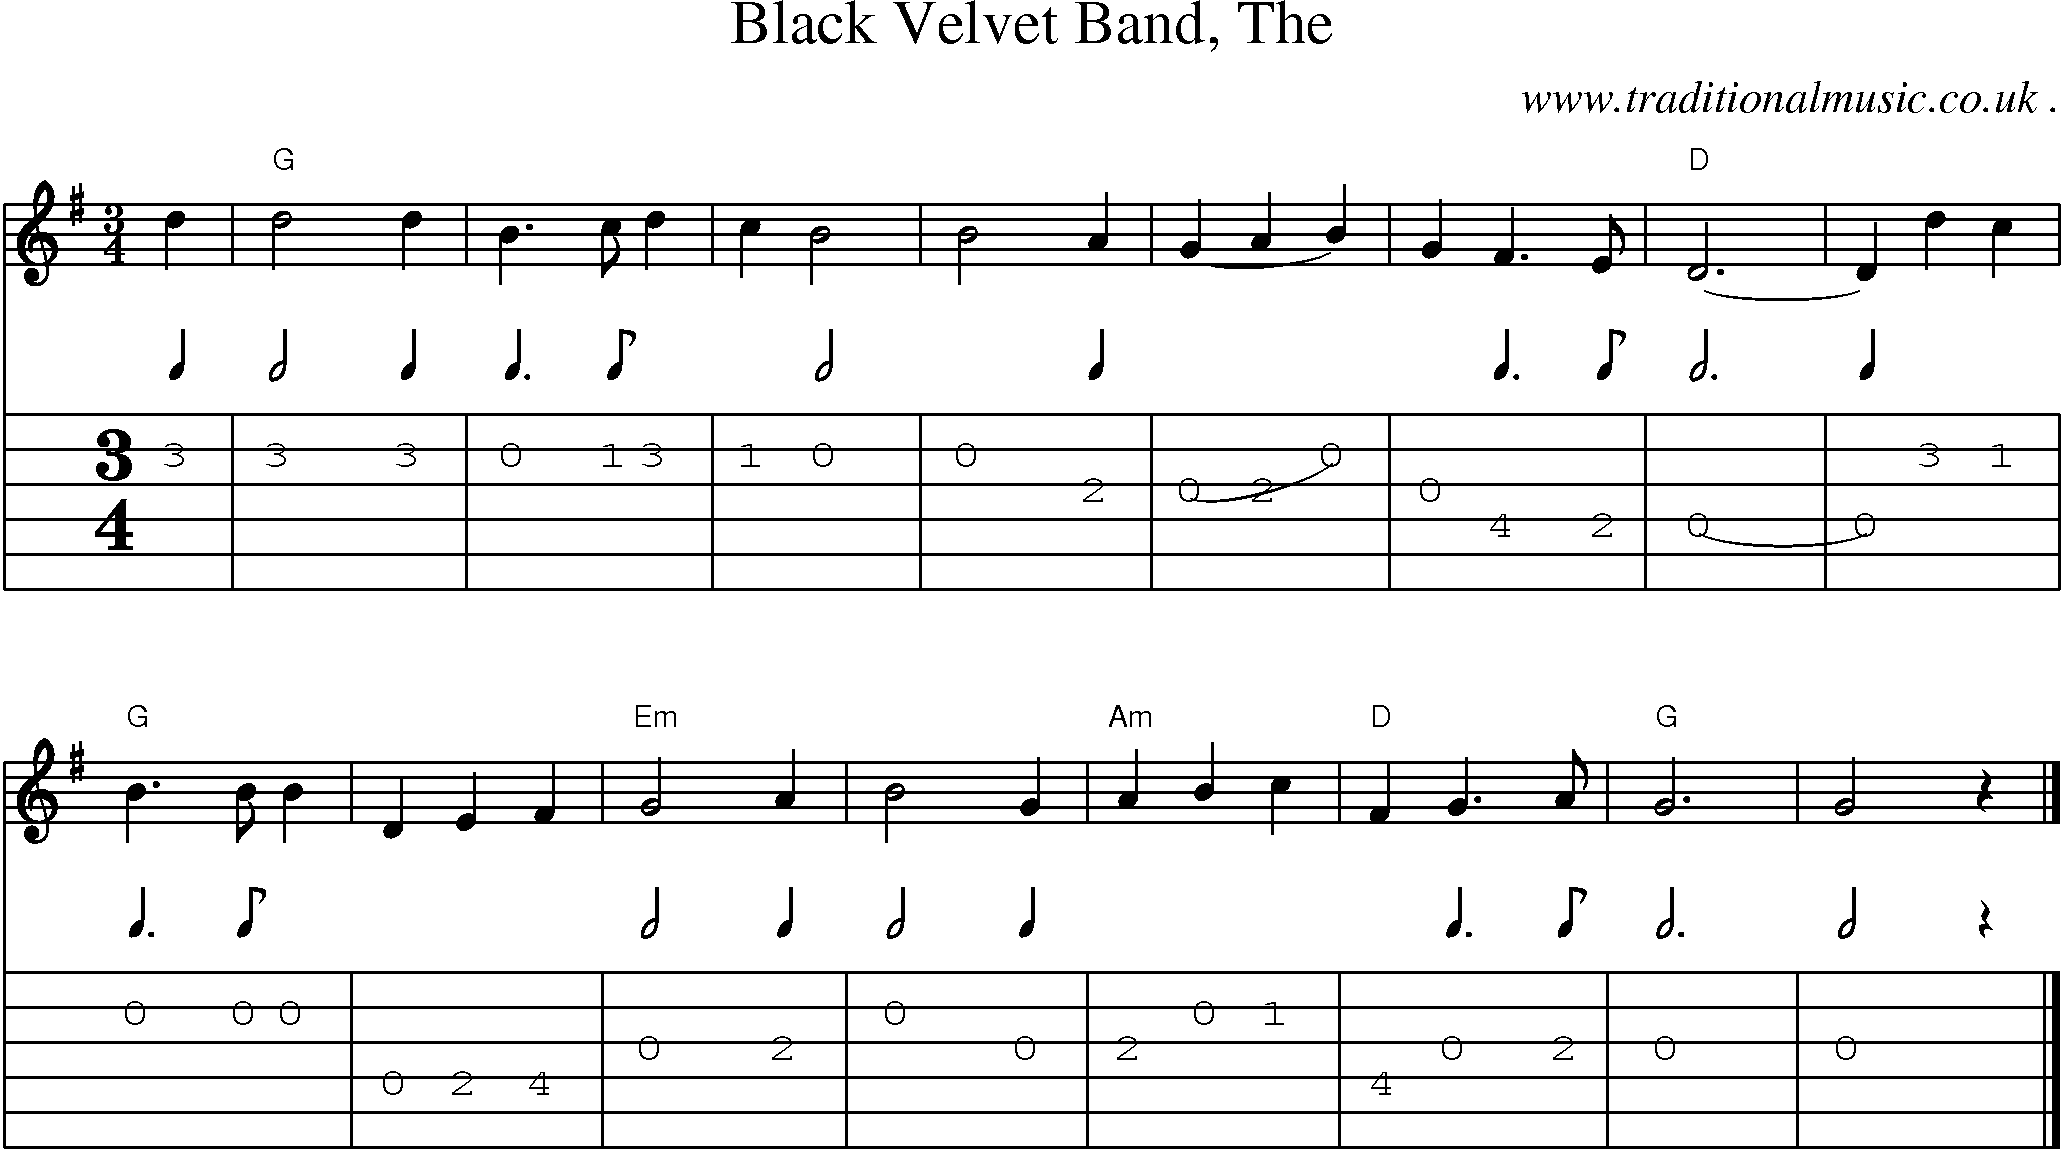 Music Score and Guitar Tabs for Black Velvet Band The